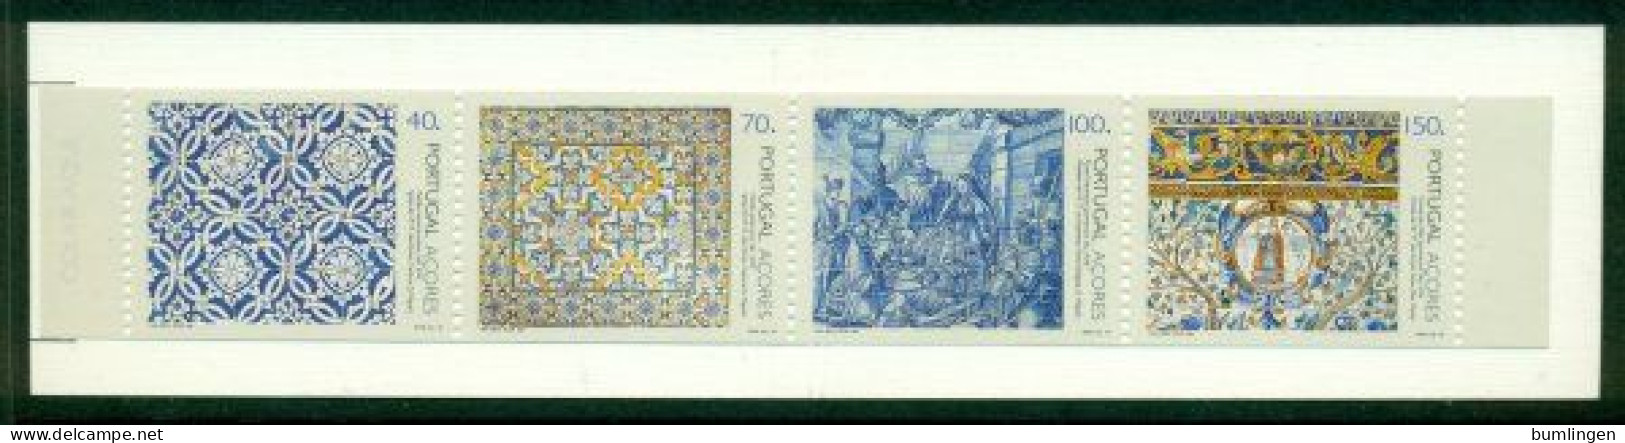 PORTUGAL – AZORES 1994 Mi MH 12 Booklet** Antique Tiles [B406] - Porcelain